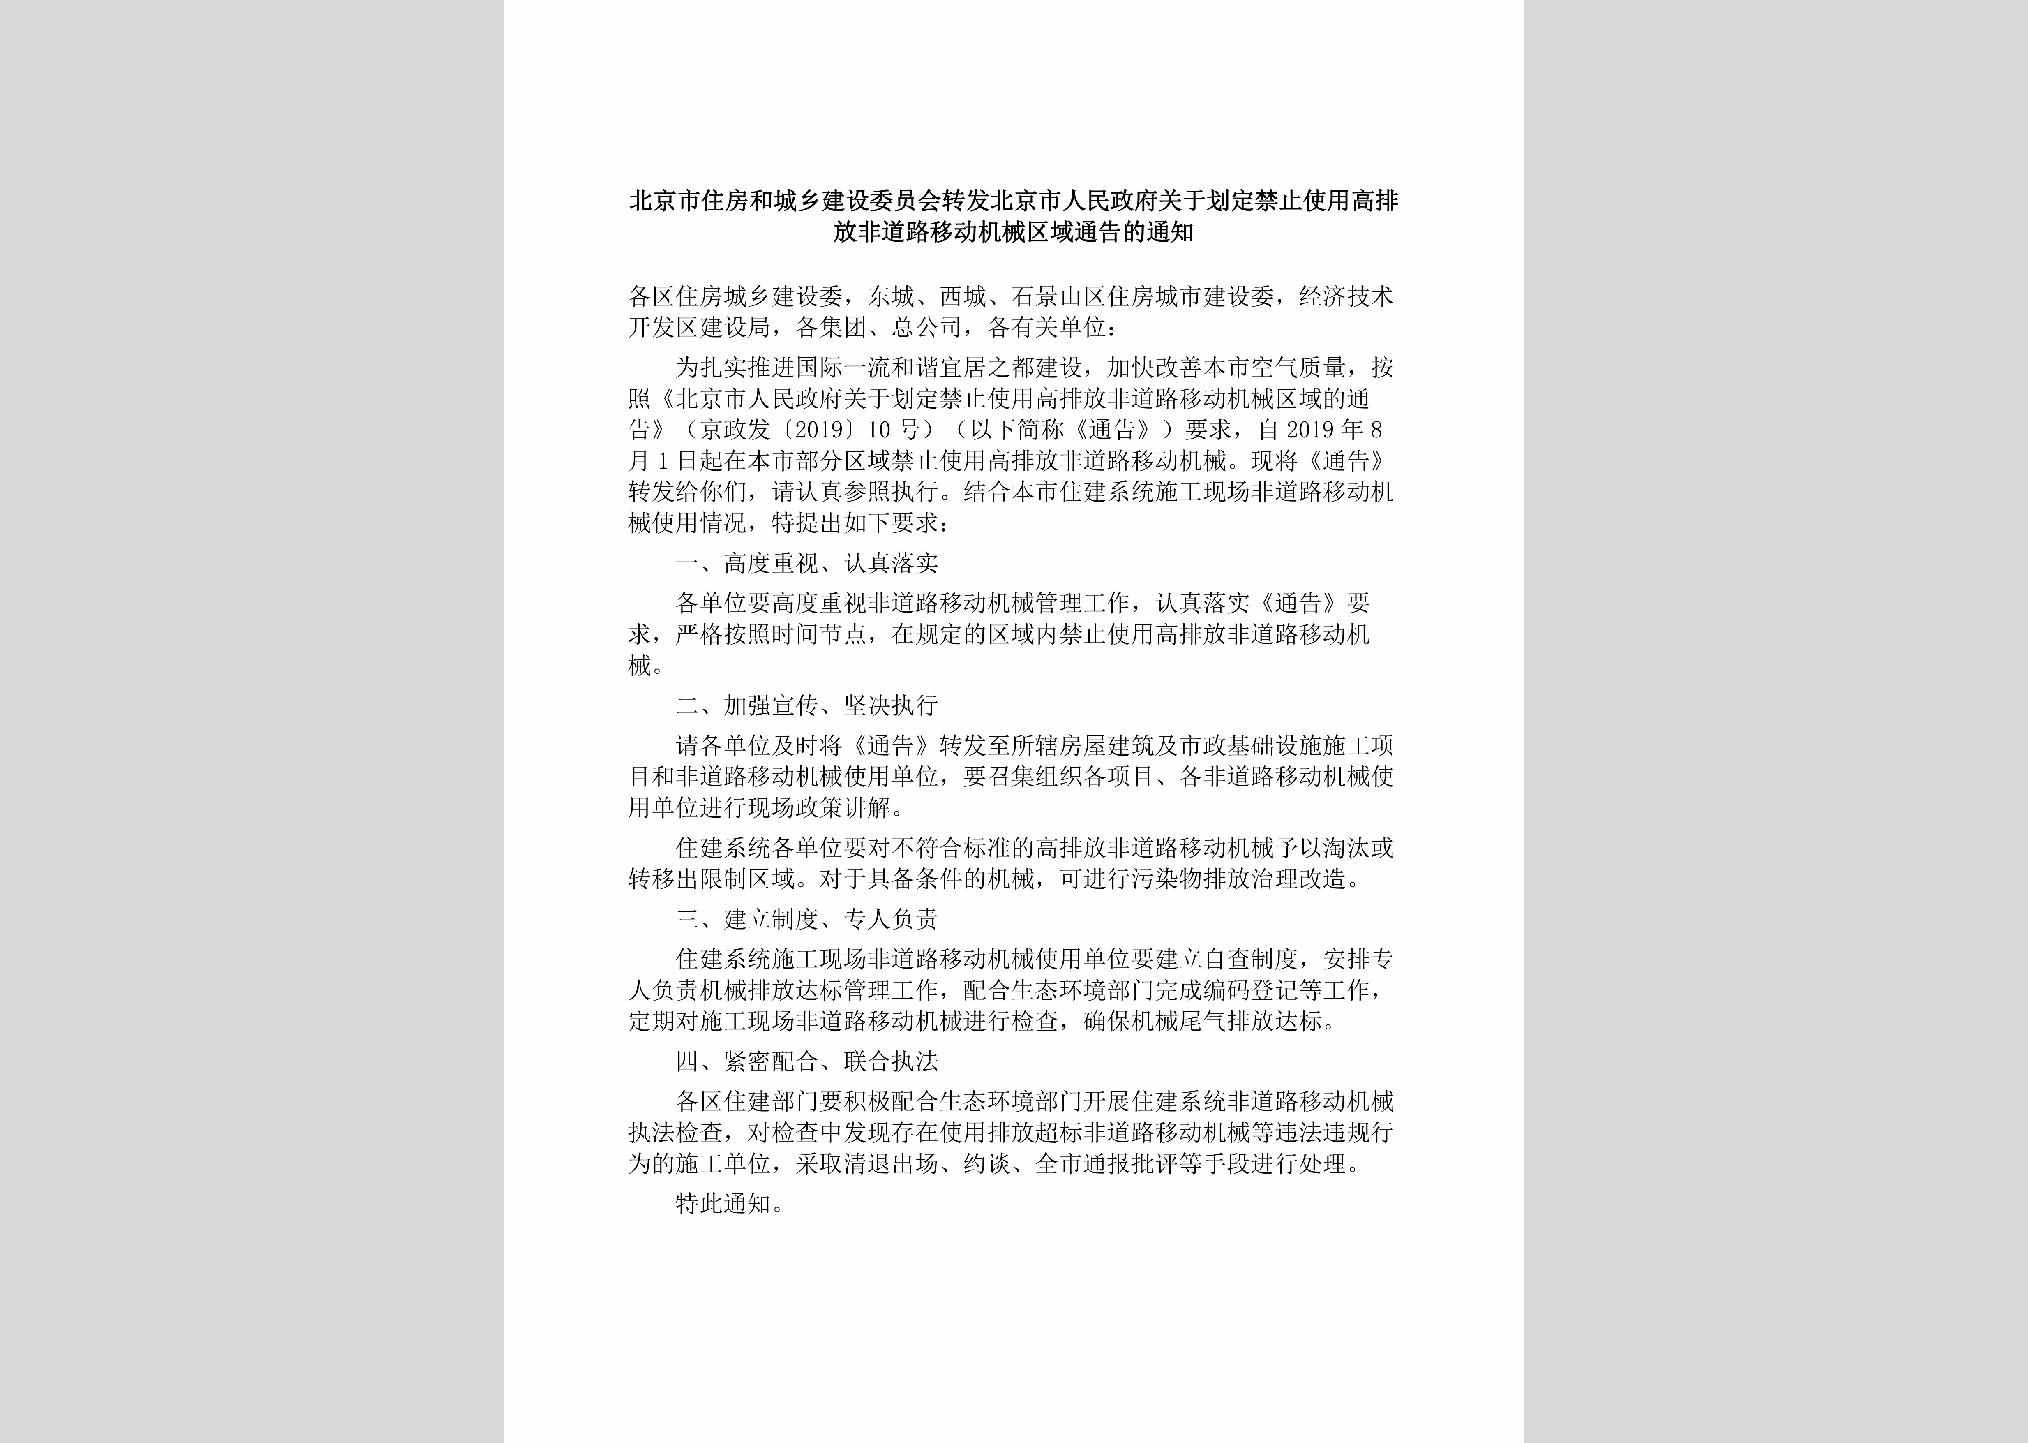 BJ-GYHDJZSY-2019：北京市住房和城乡建设委员会转发北京市人民政府关于划定禁止使用高排放非道路移动机械区域通告的通知